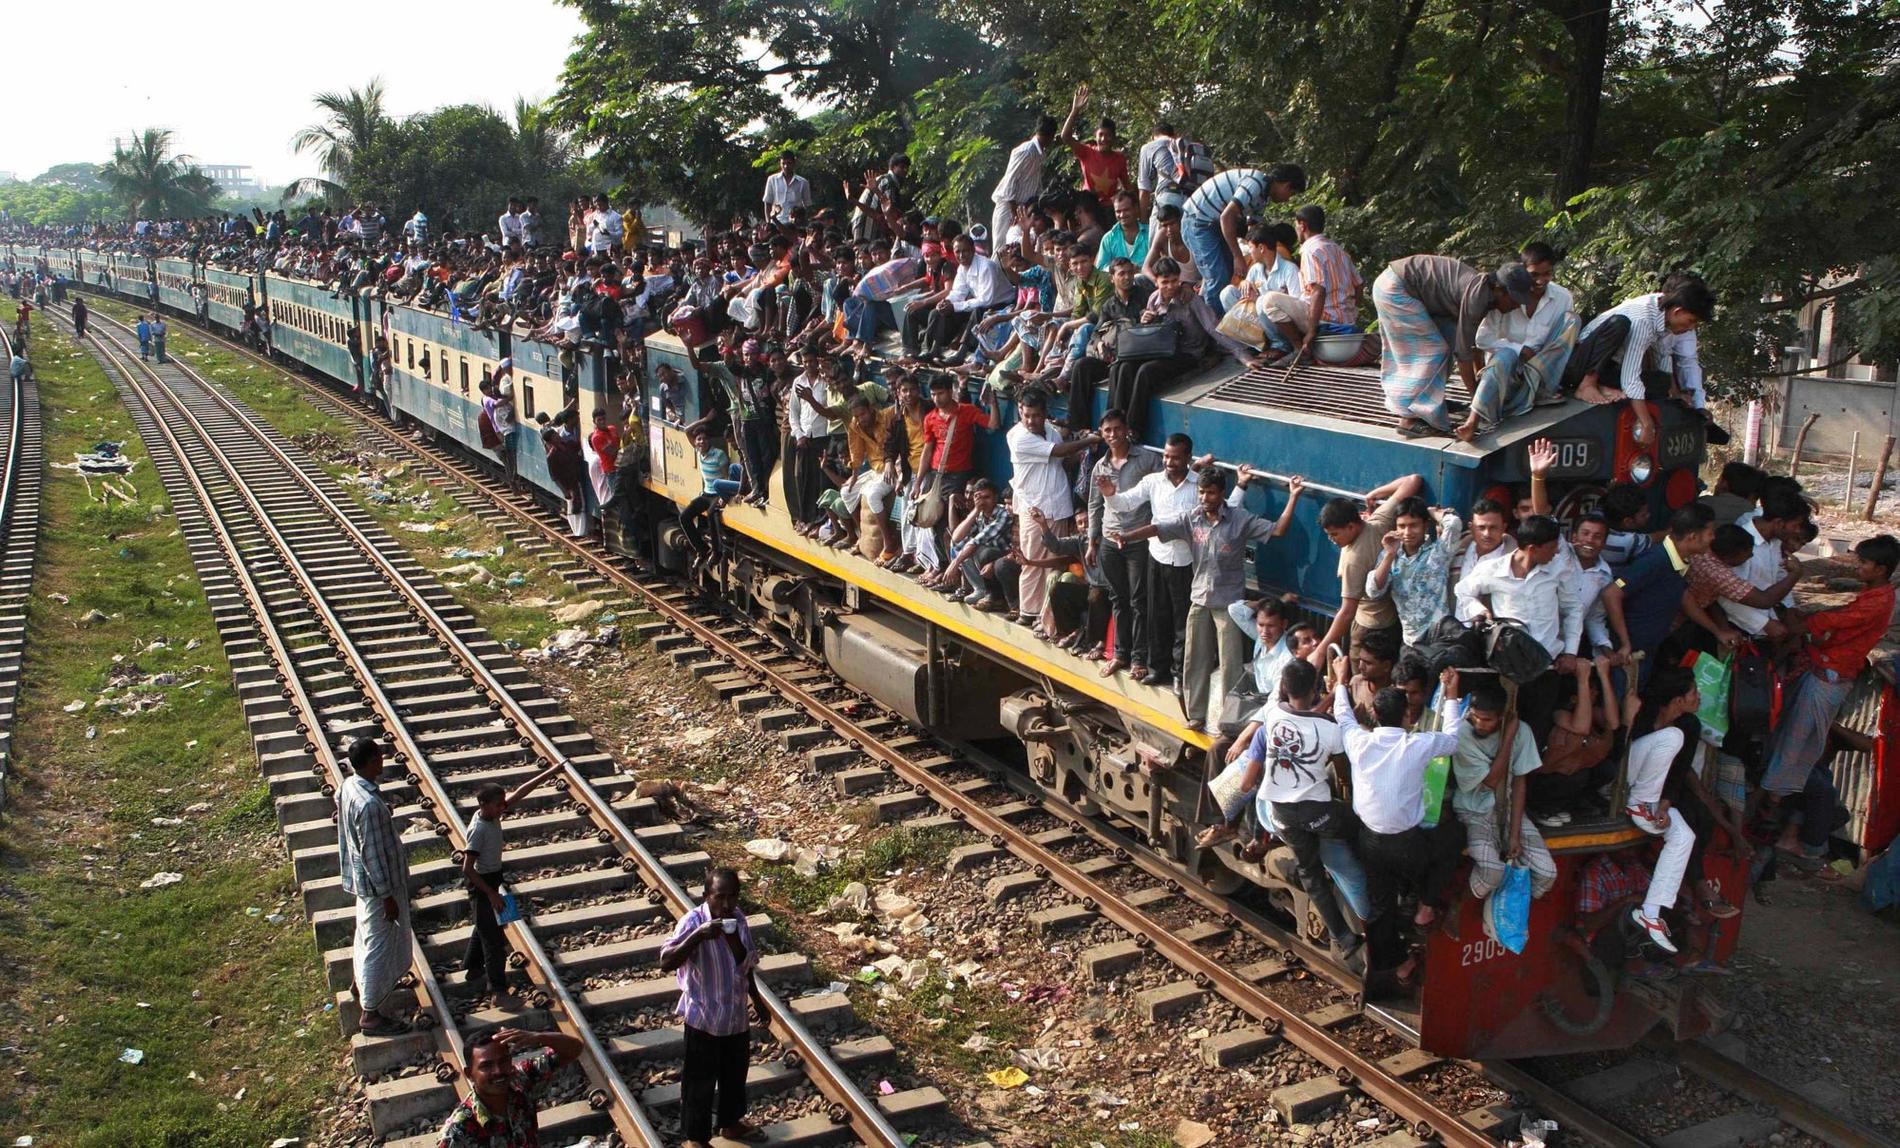 Var som helst i södra Asien... Tågpassagerare i Indien, Pakistan och Bangladesh (bilden) har störst anledning att vara nervösa. Sedan 1980 har störst antal tågrelaterade dödsoffer krävts i dessa tre länder. Överfulla tåg förstärker dessutom olycksstatistiken.